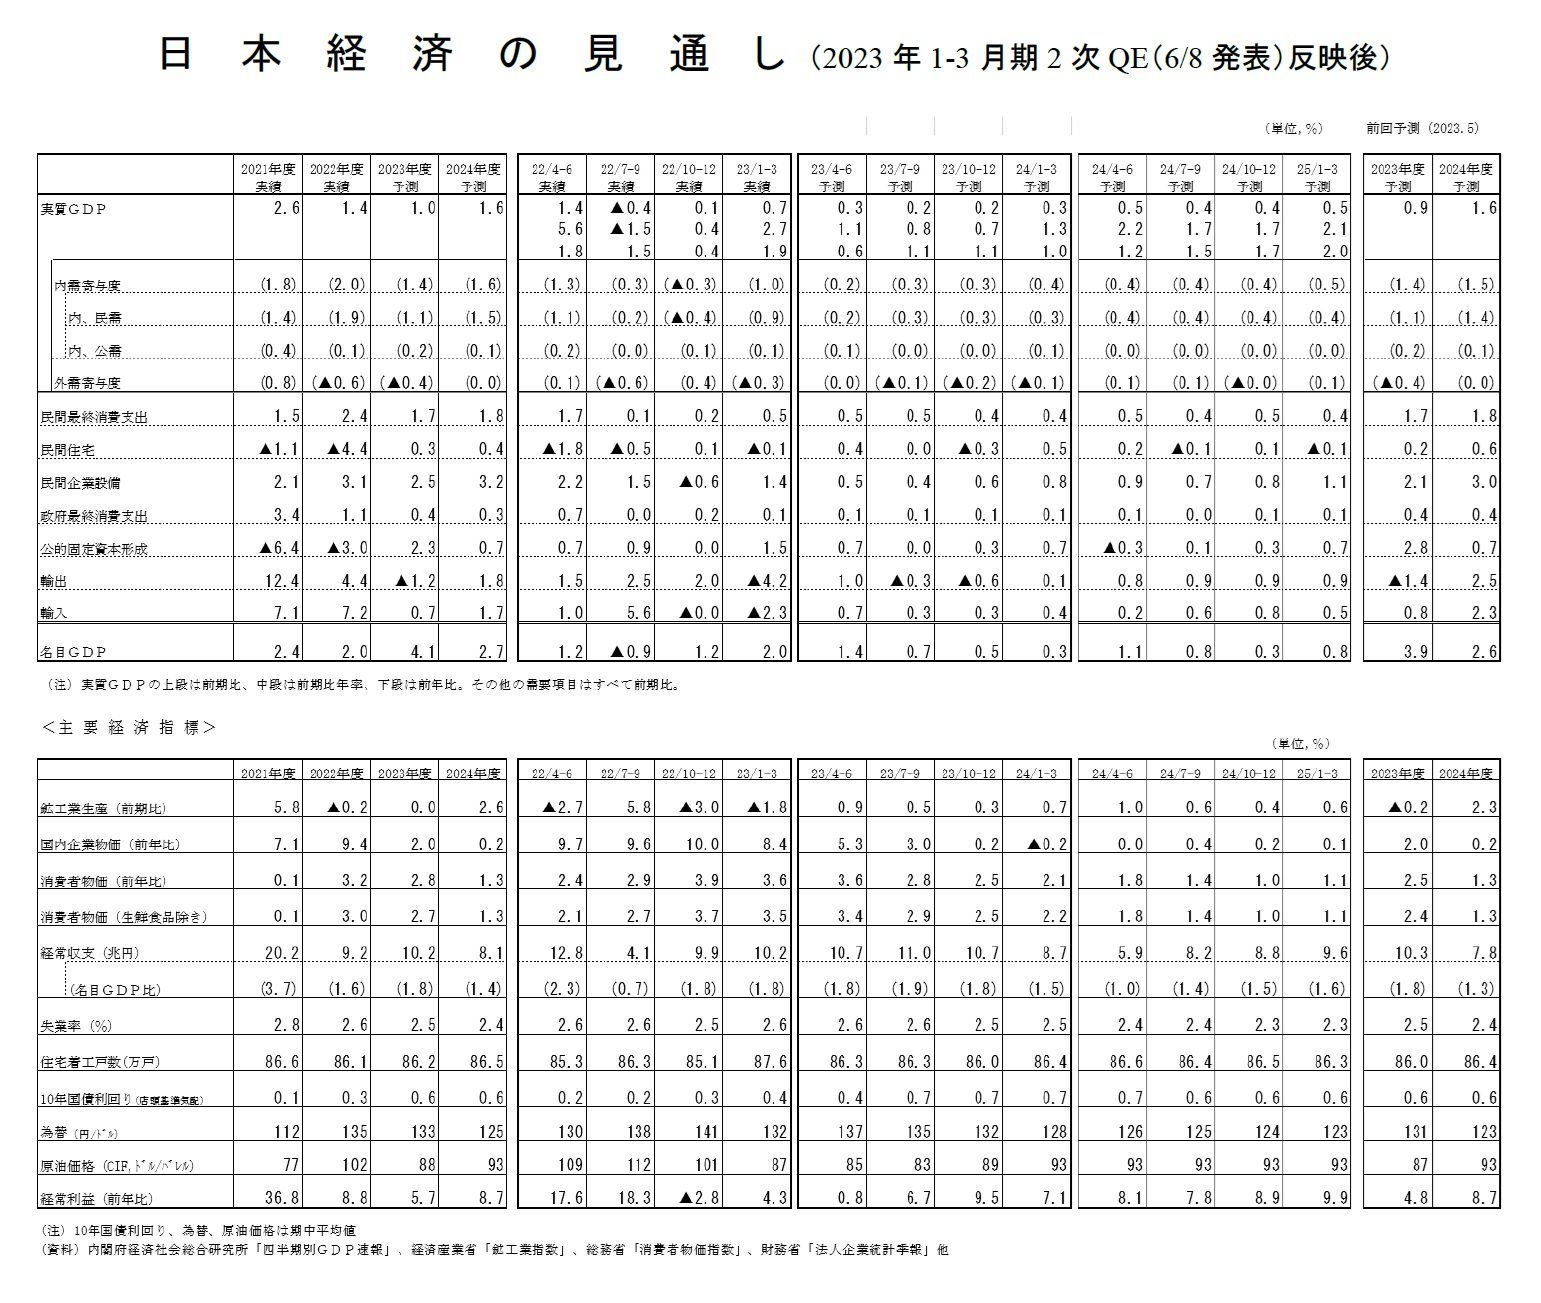 日本経済の見通し（2023年1-3月期2次QE（6/8発表）反映後）